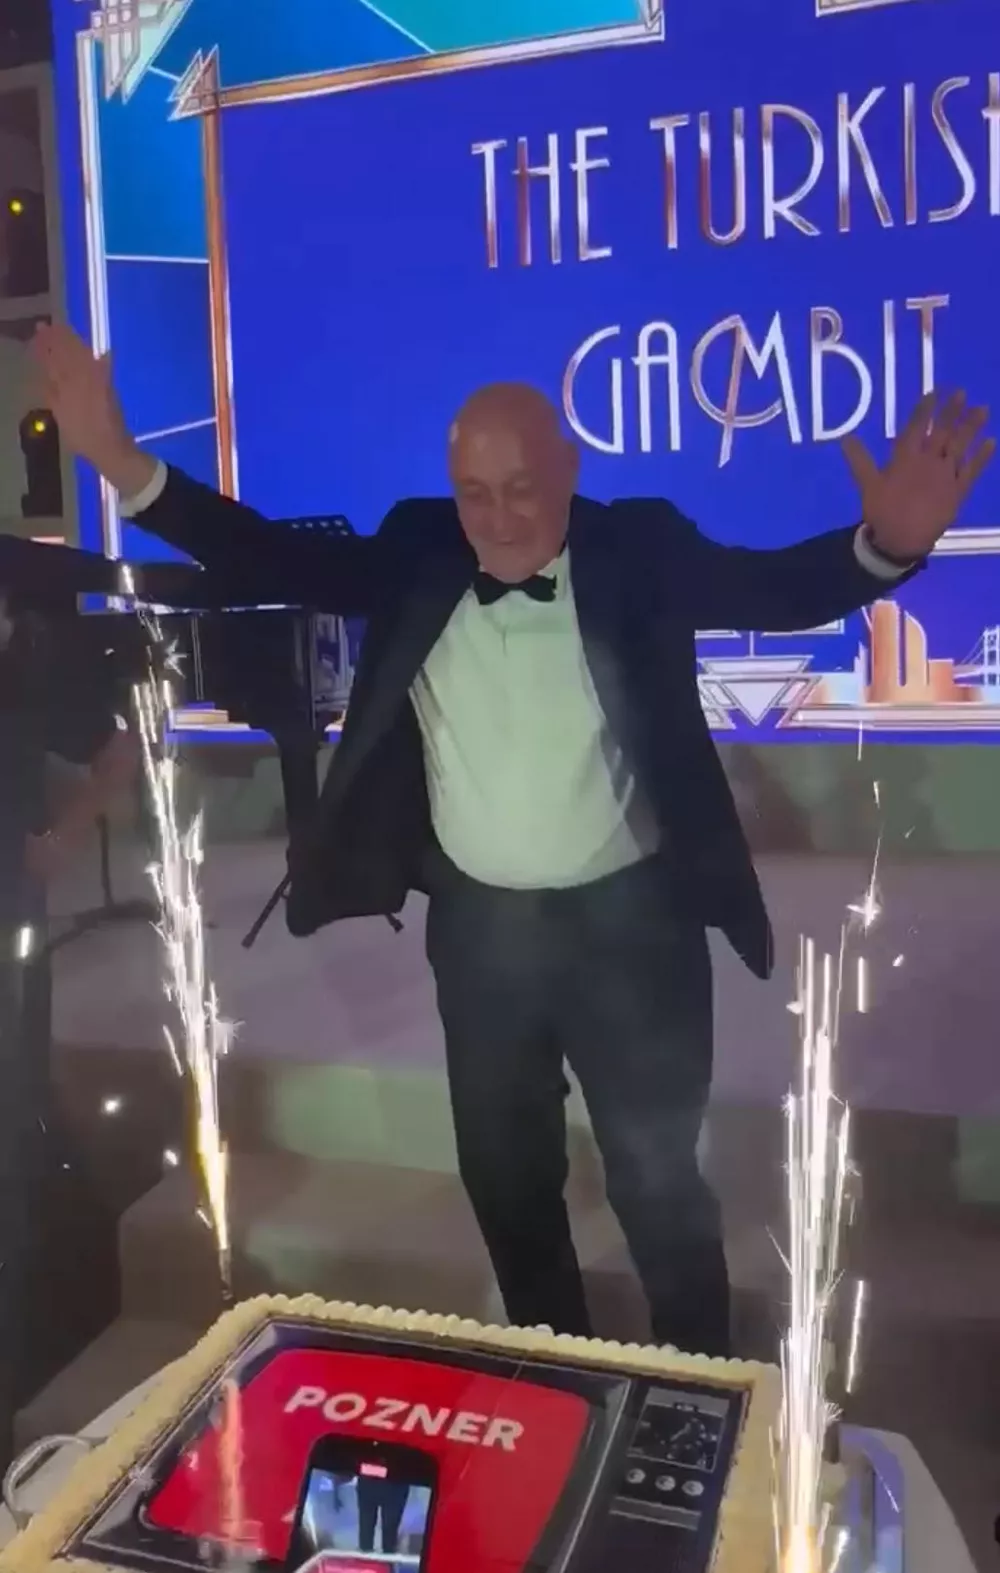 Владимир Познер во время празднования queideeidrhirhatf